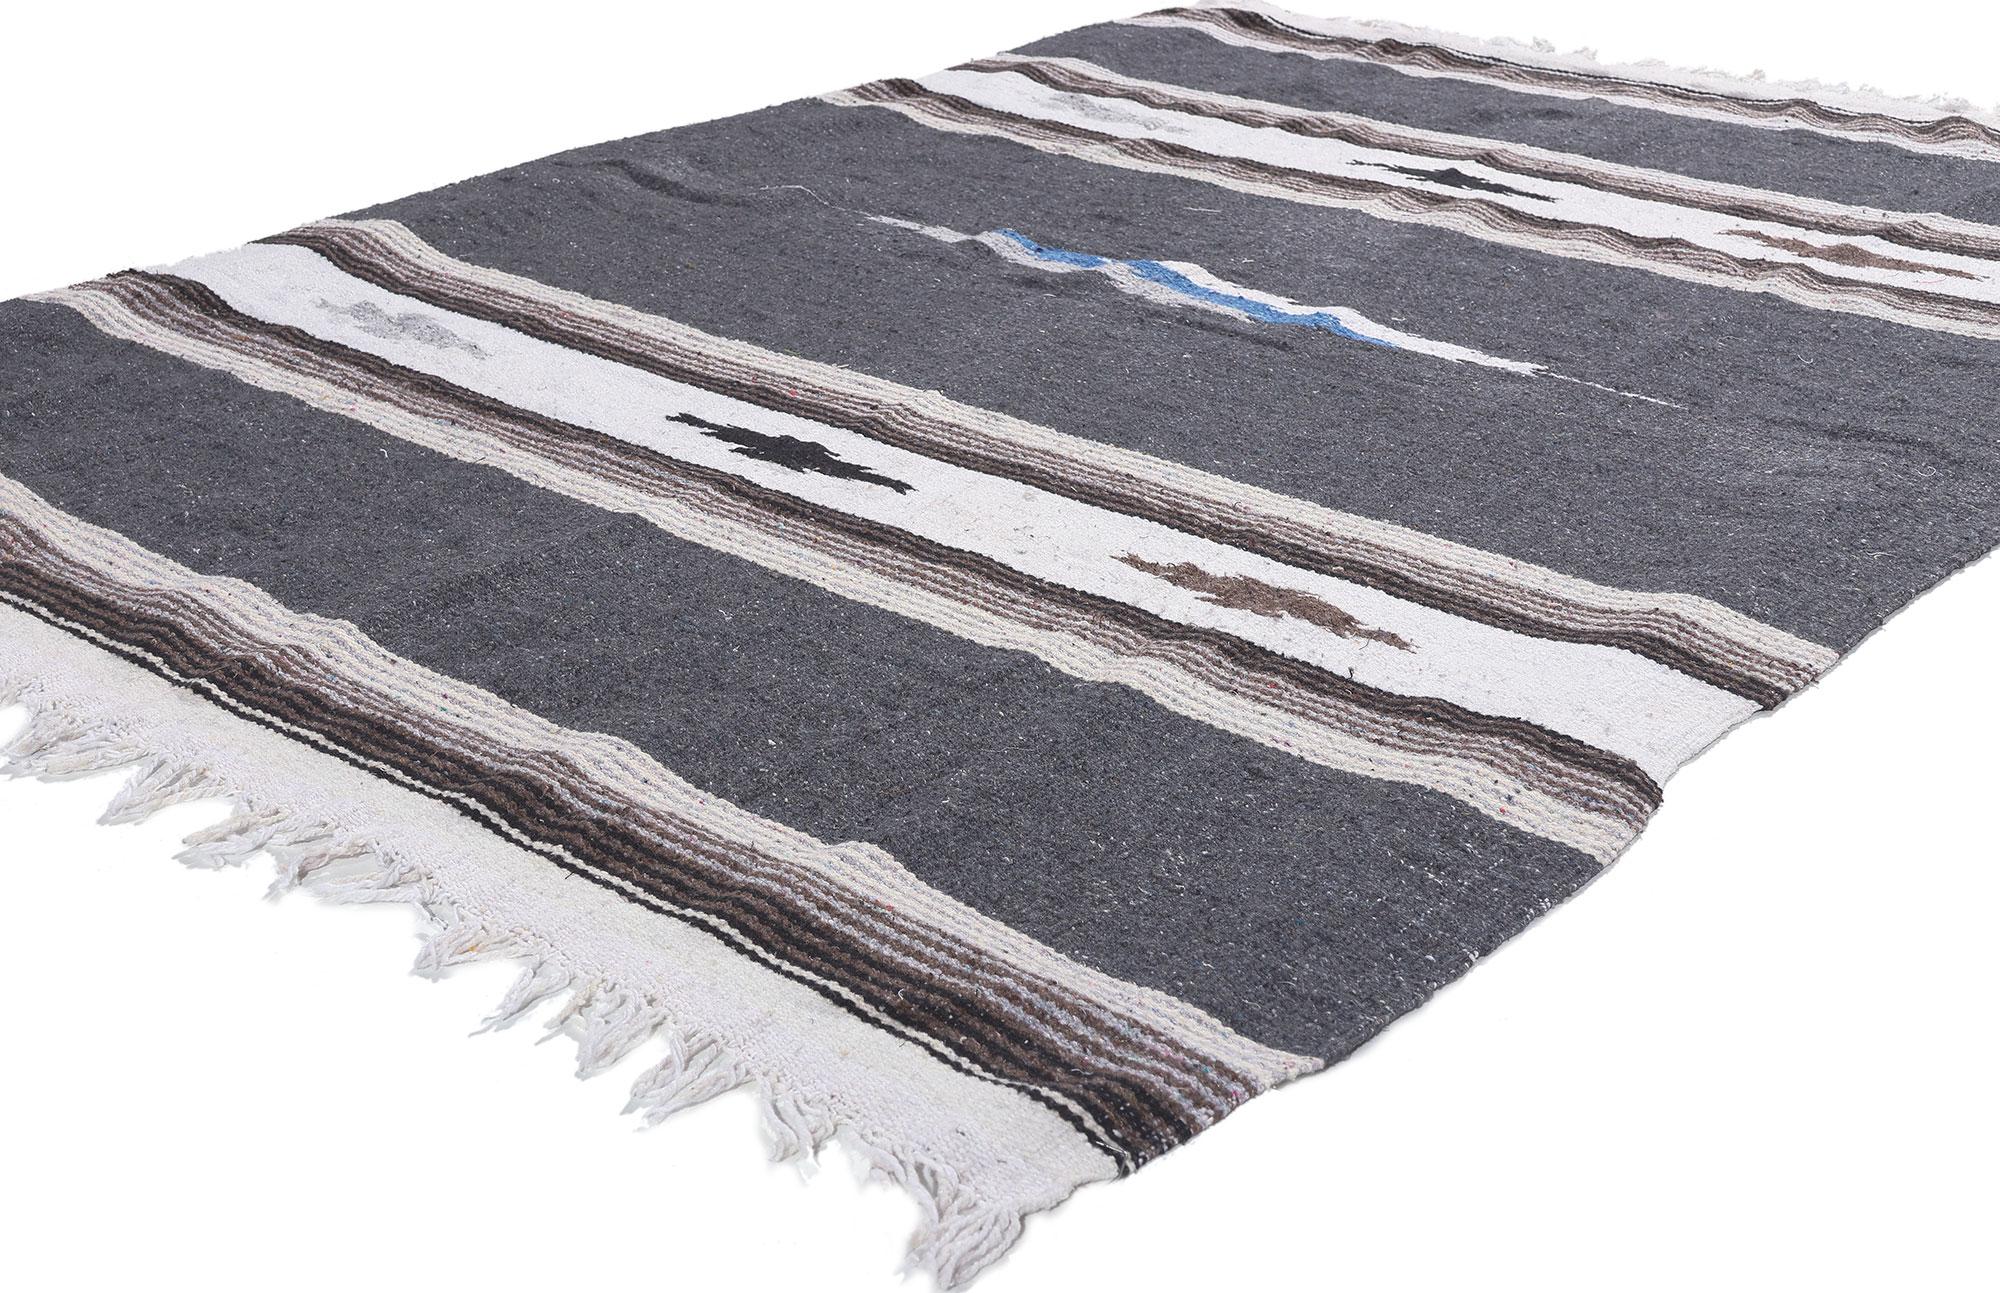 78551 Vintage Mexican Serape Blanket Kilim Rug, 04'05 x 06'04.
Émanant du style du Sud-Ouest et d'une sensibilité rustique, ce tapis mexicain Serapi kilim tissé à la main est une vision captivante de la beauté tissée. Le design géométrique